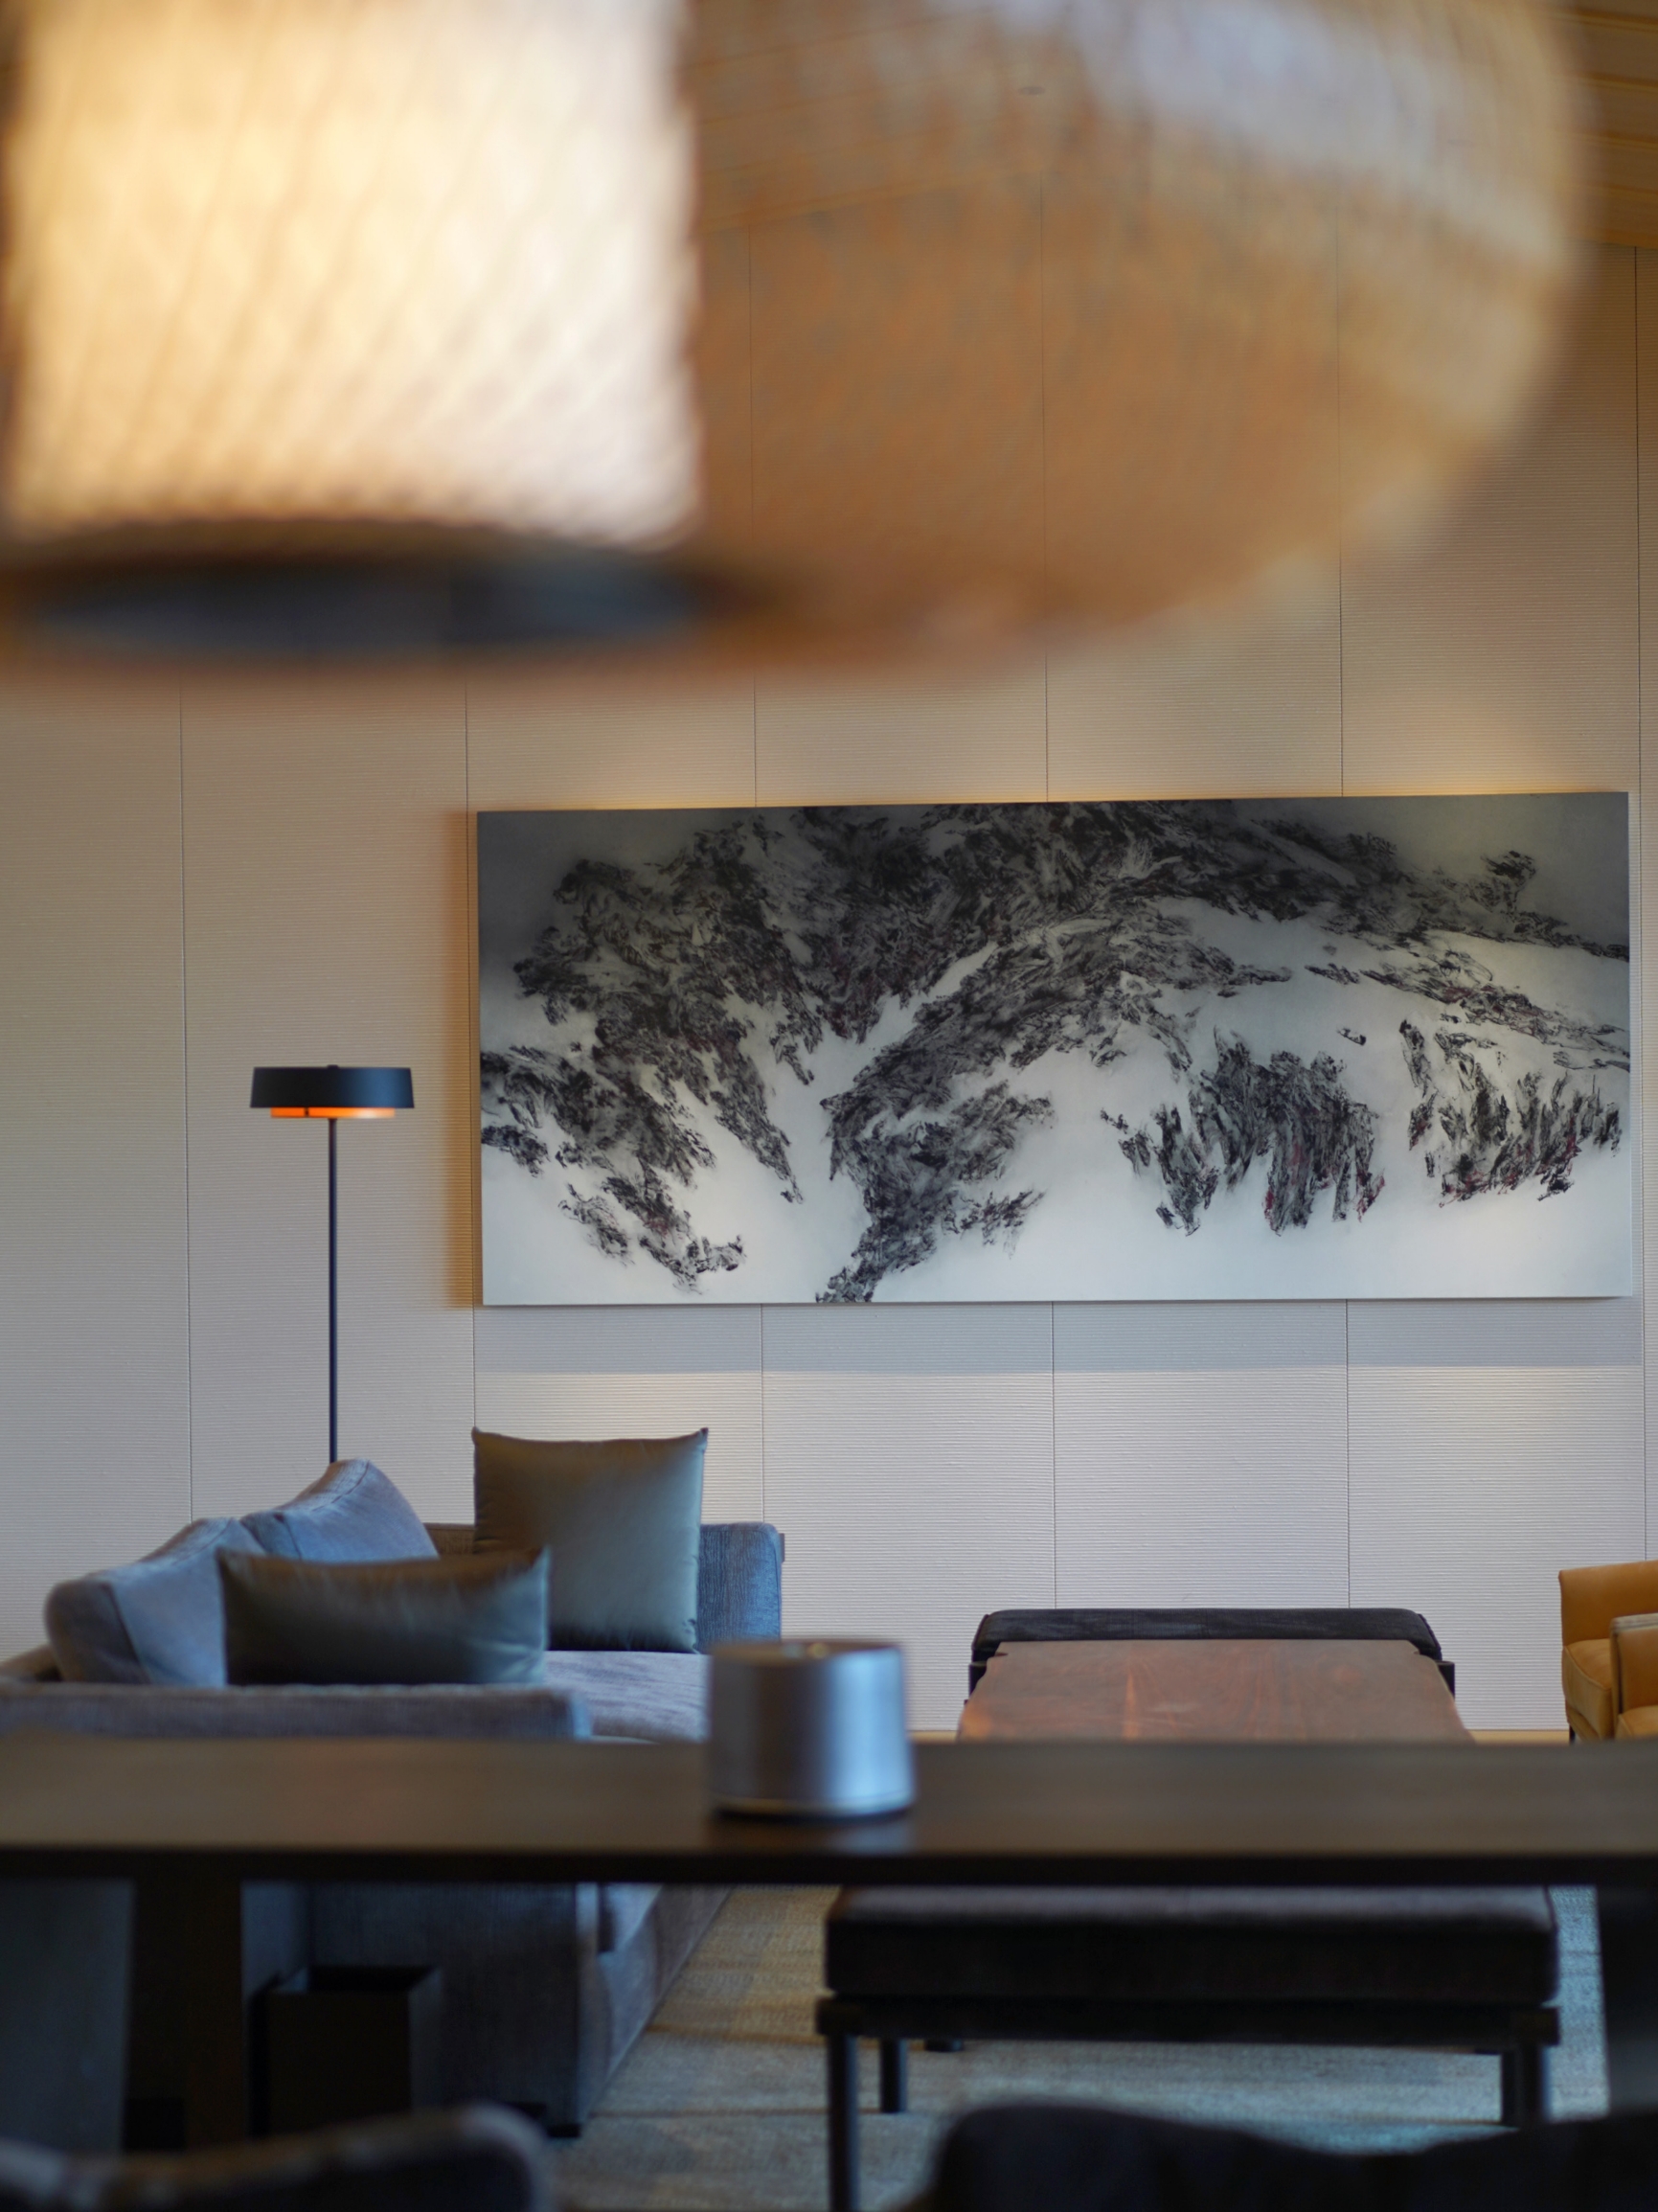 踏入丽思卡尔顿的房间，就感受到极致的日式美学设计理念。房间的设计与周围的自然景色融为一体，展现出绝美